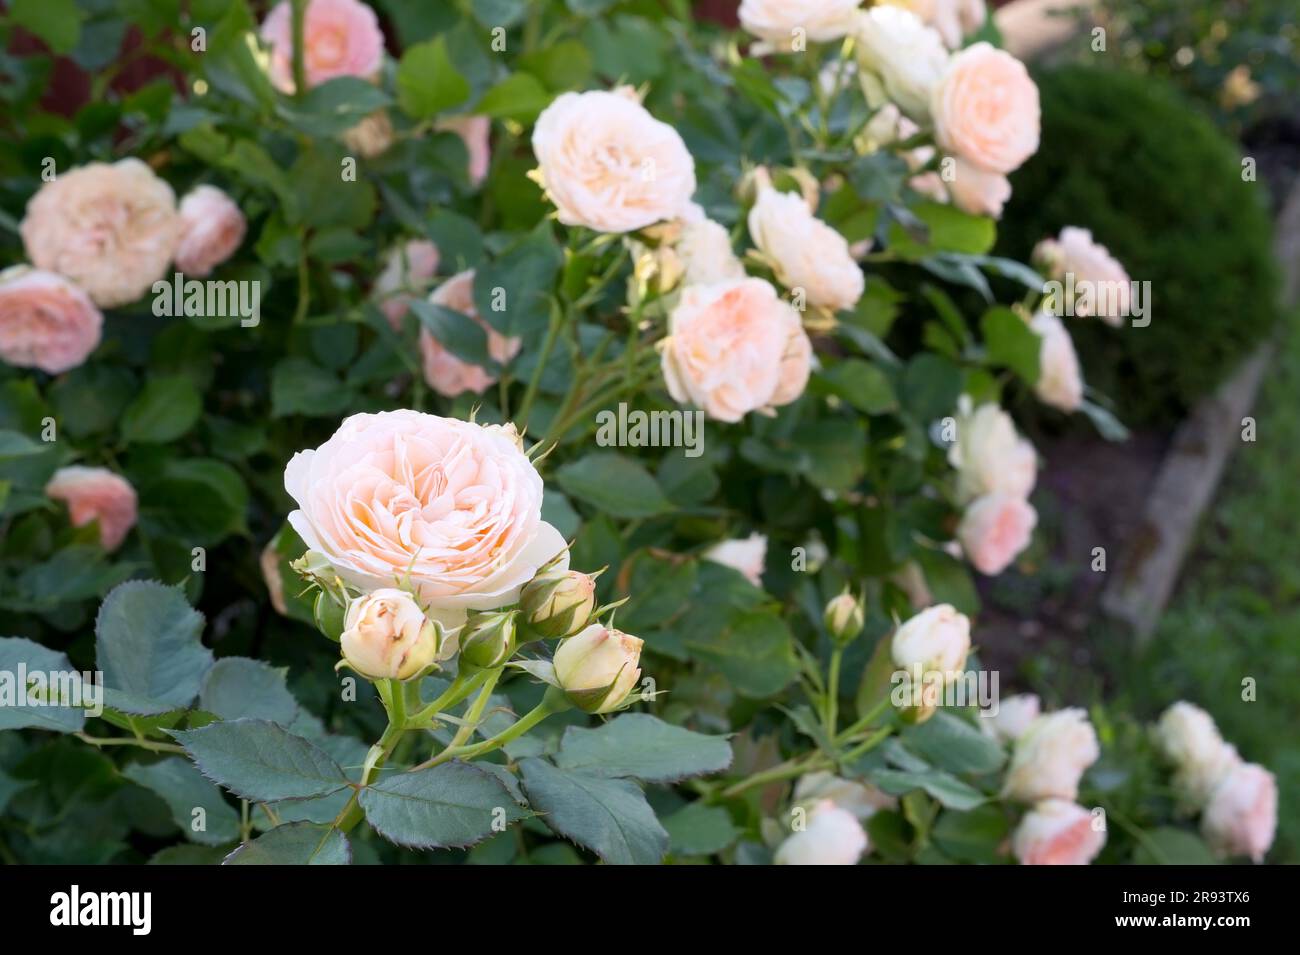 Beautiful pink rose flower Pastella. Blooming Floribunda Rose. Hybrid tea roses in garden. Stock Photo